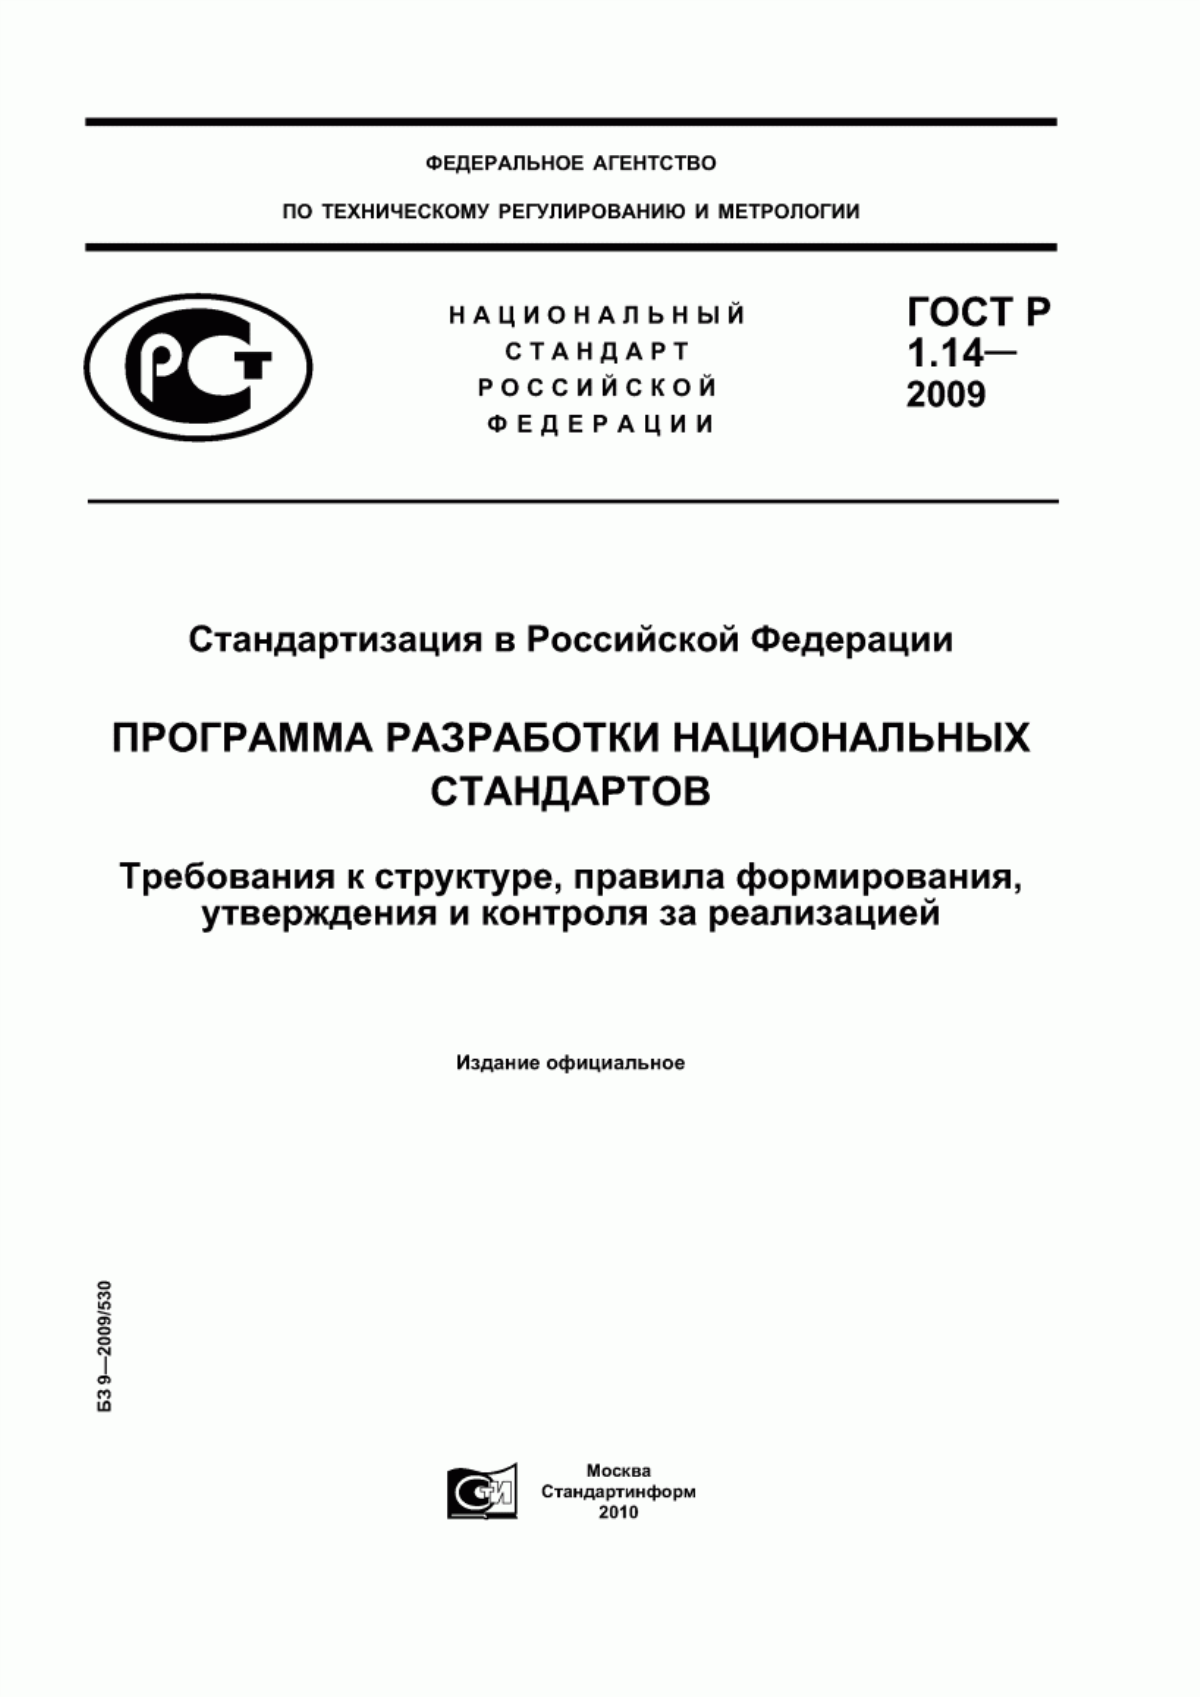 ГОСТ Р 1.14-2009 Стандартизация в Российской Федерации. Программа разработки национальных стандартов. Требования к структуре, правила формирования, утверждения и контроля за реализацией